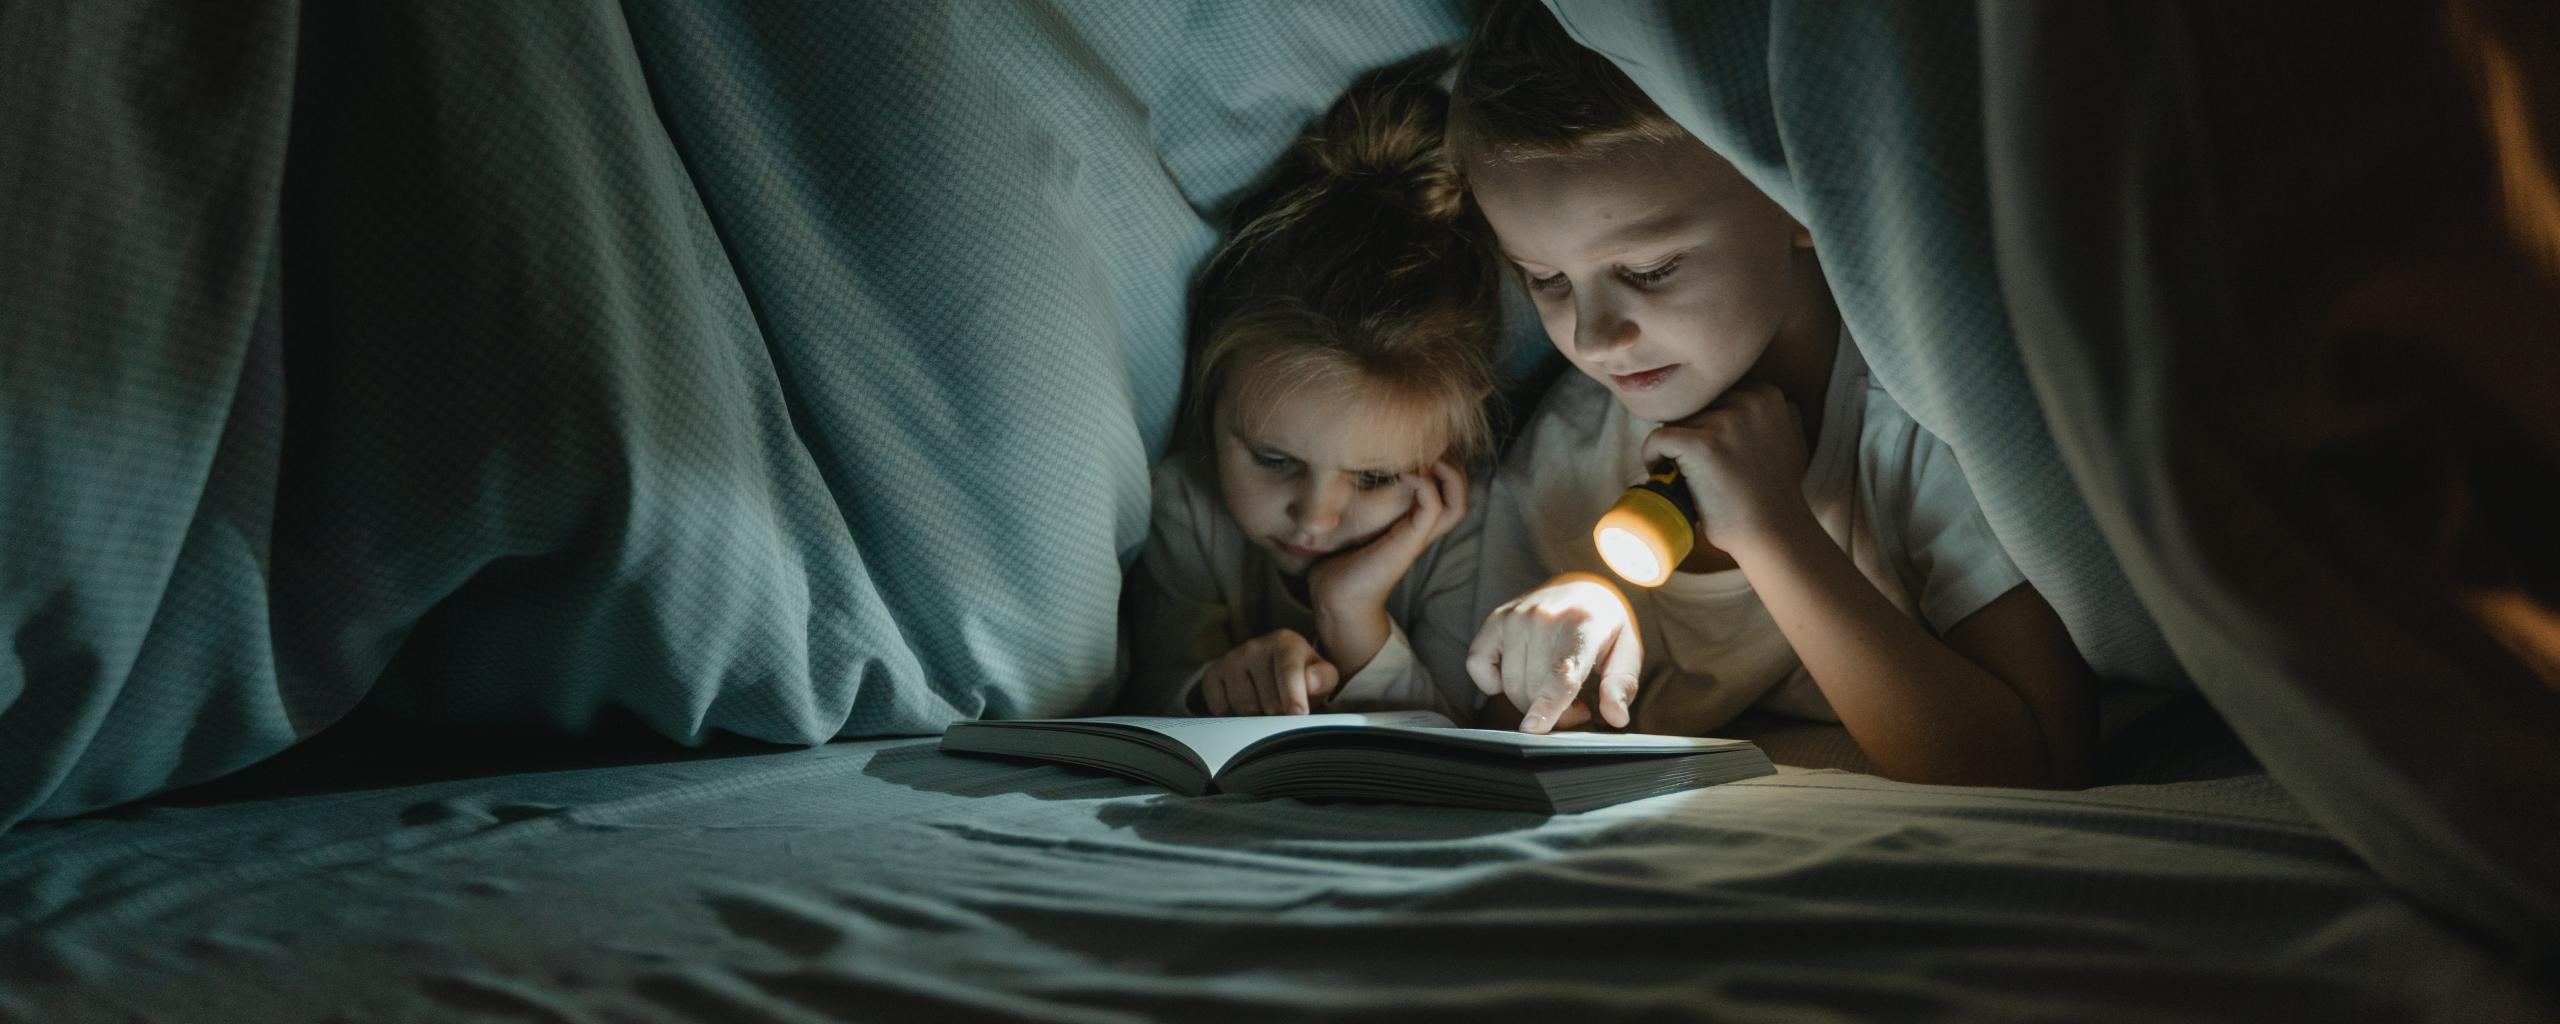 Twee kinderen die met een zaklamp aan een boek lezen onder de dekens.